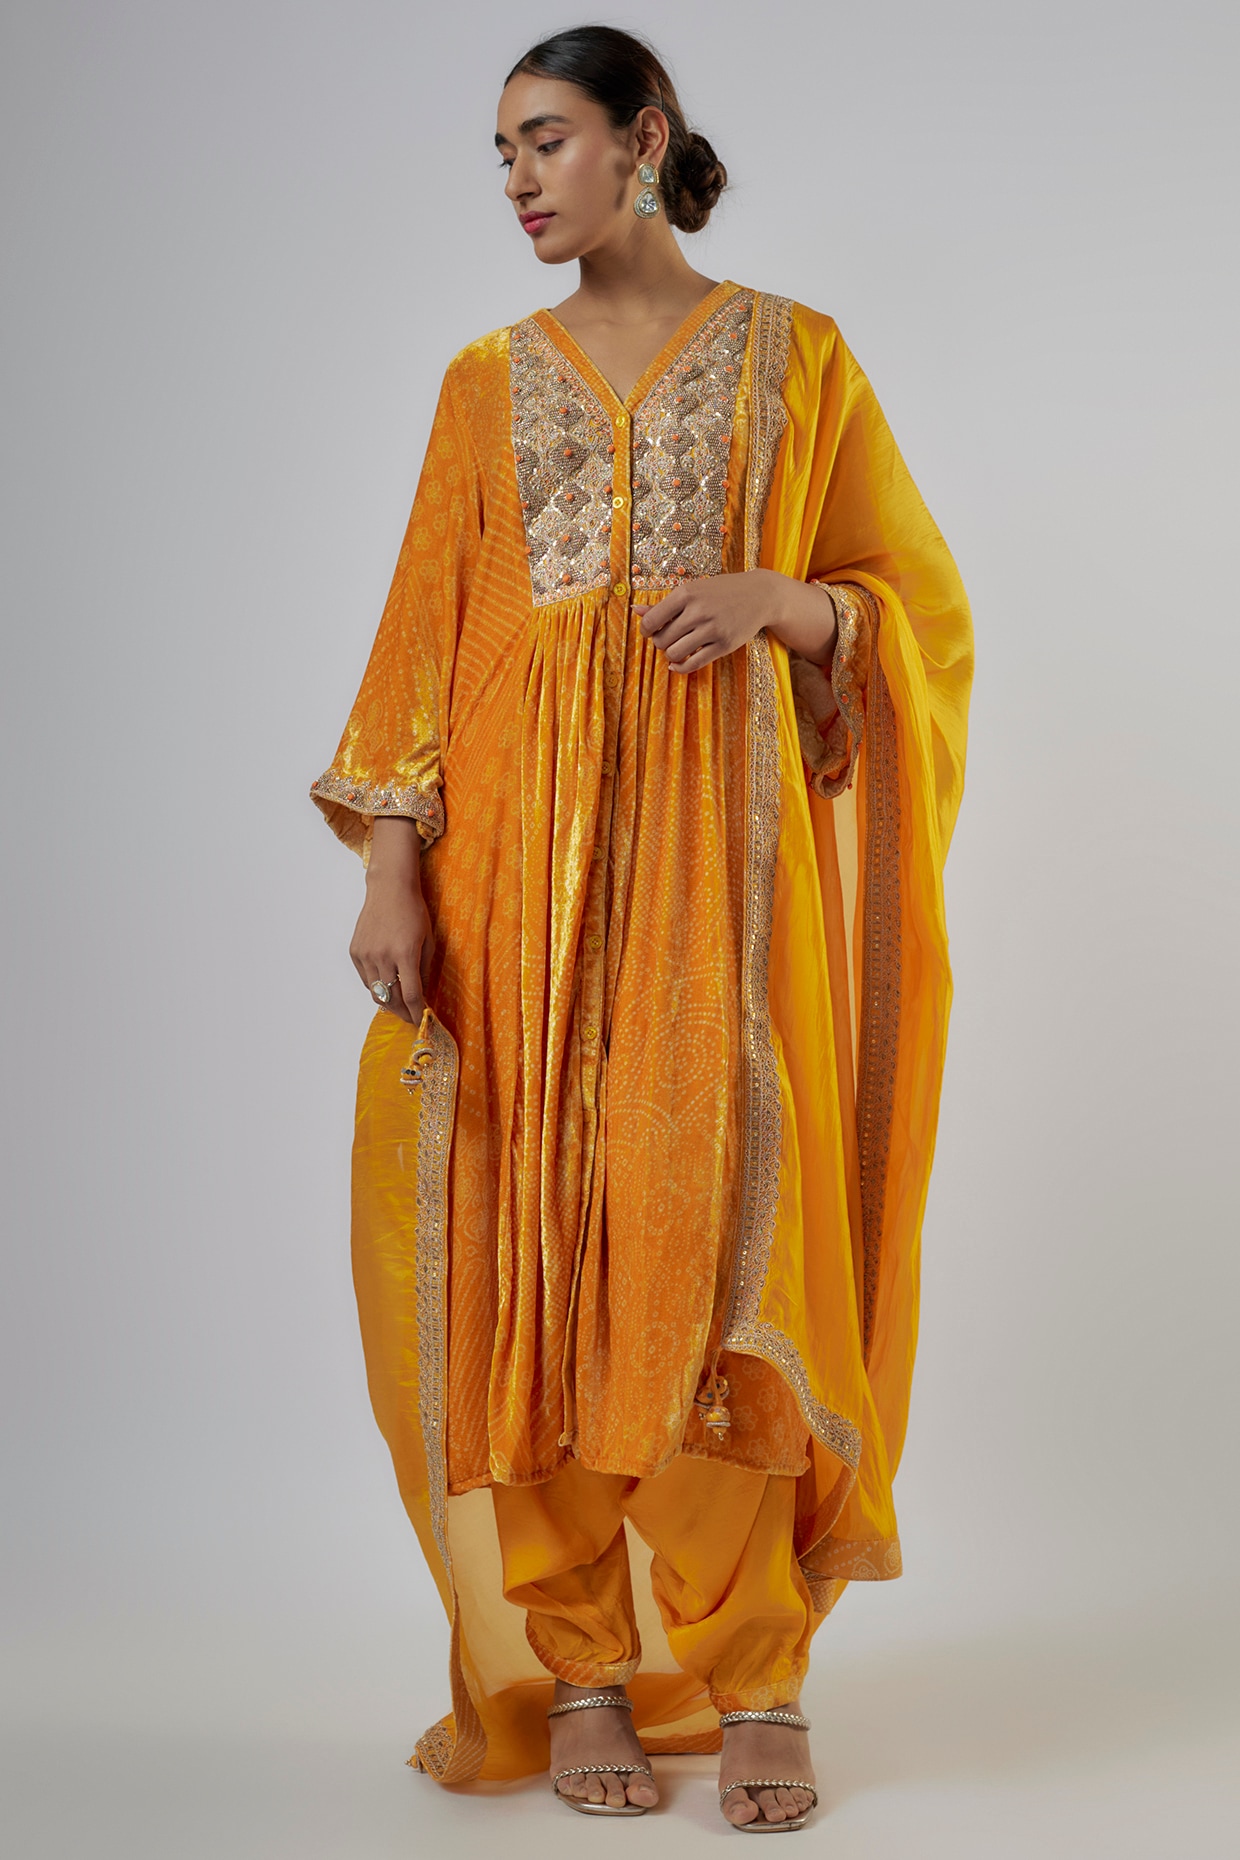 Women Wear Cotton Bandhani Printed Anarkali Kurti at Rs 490/piece in Jaipur